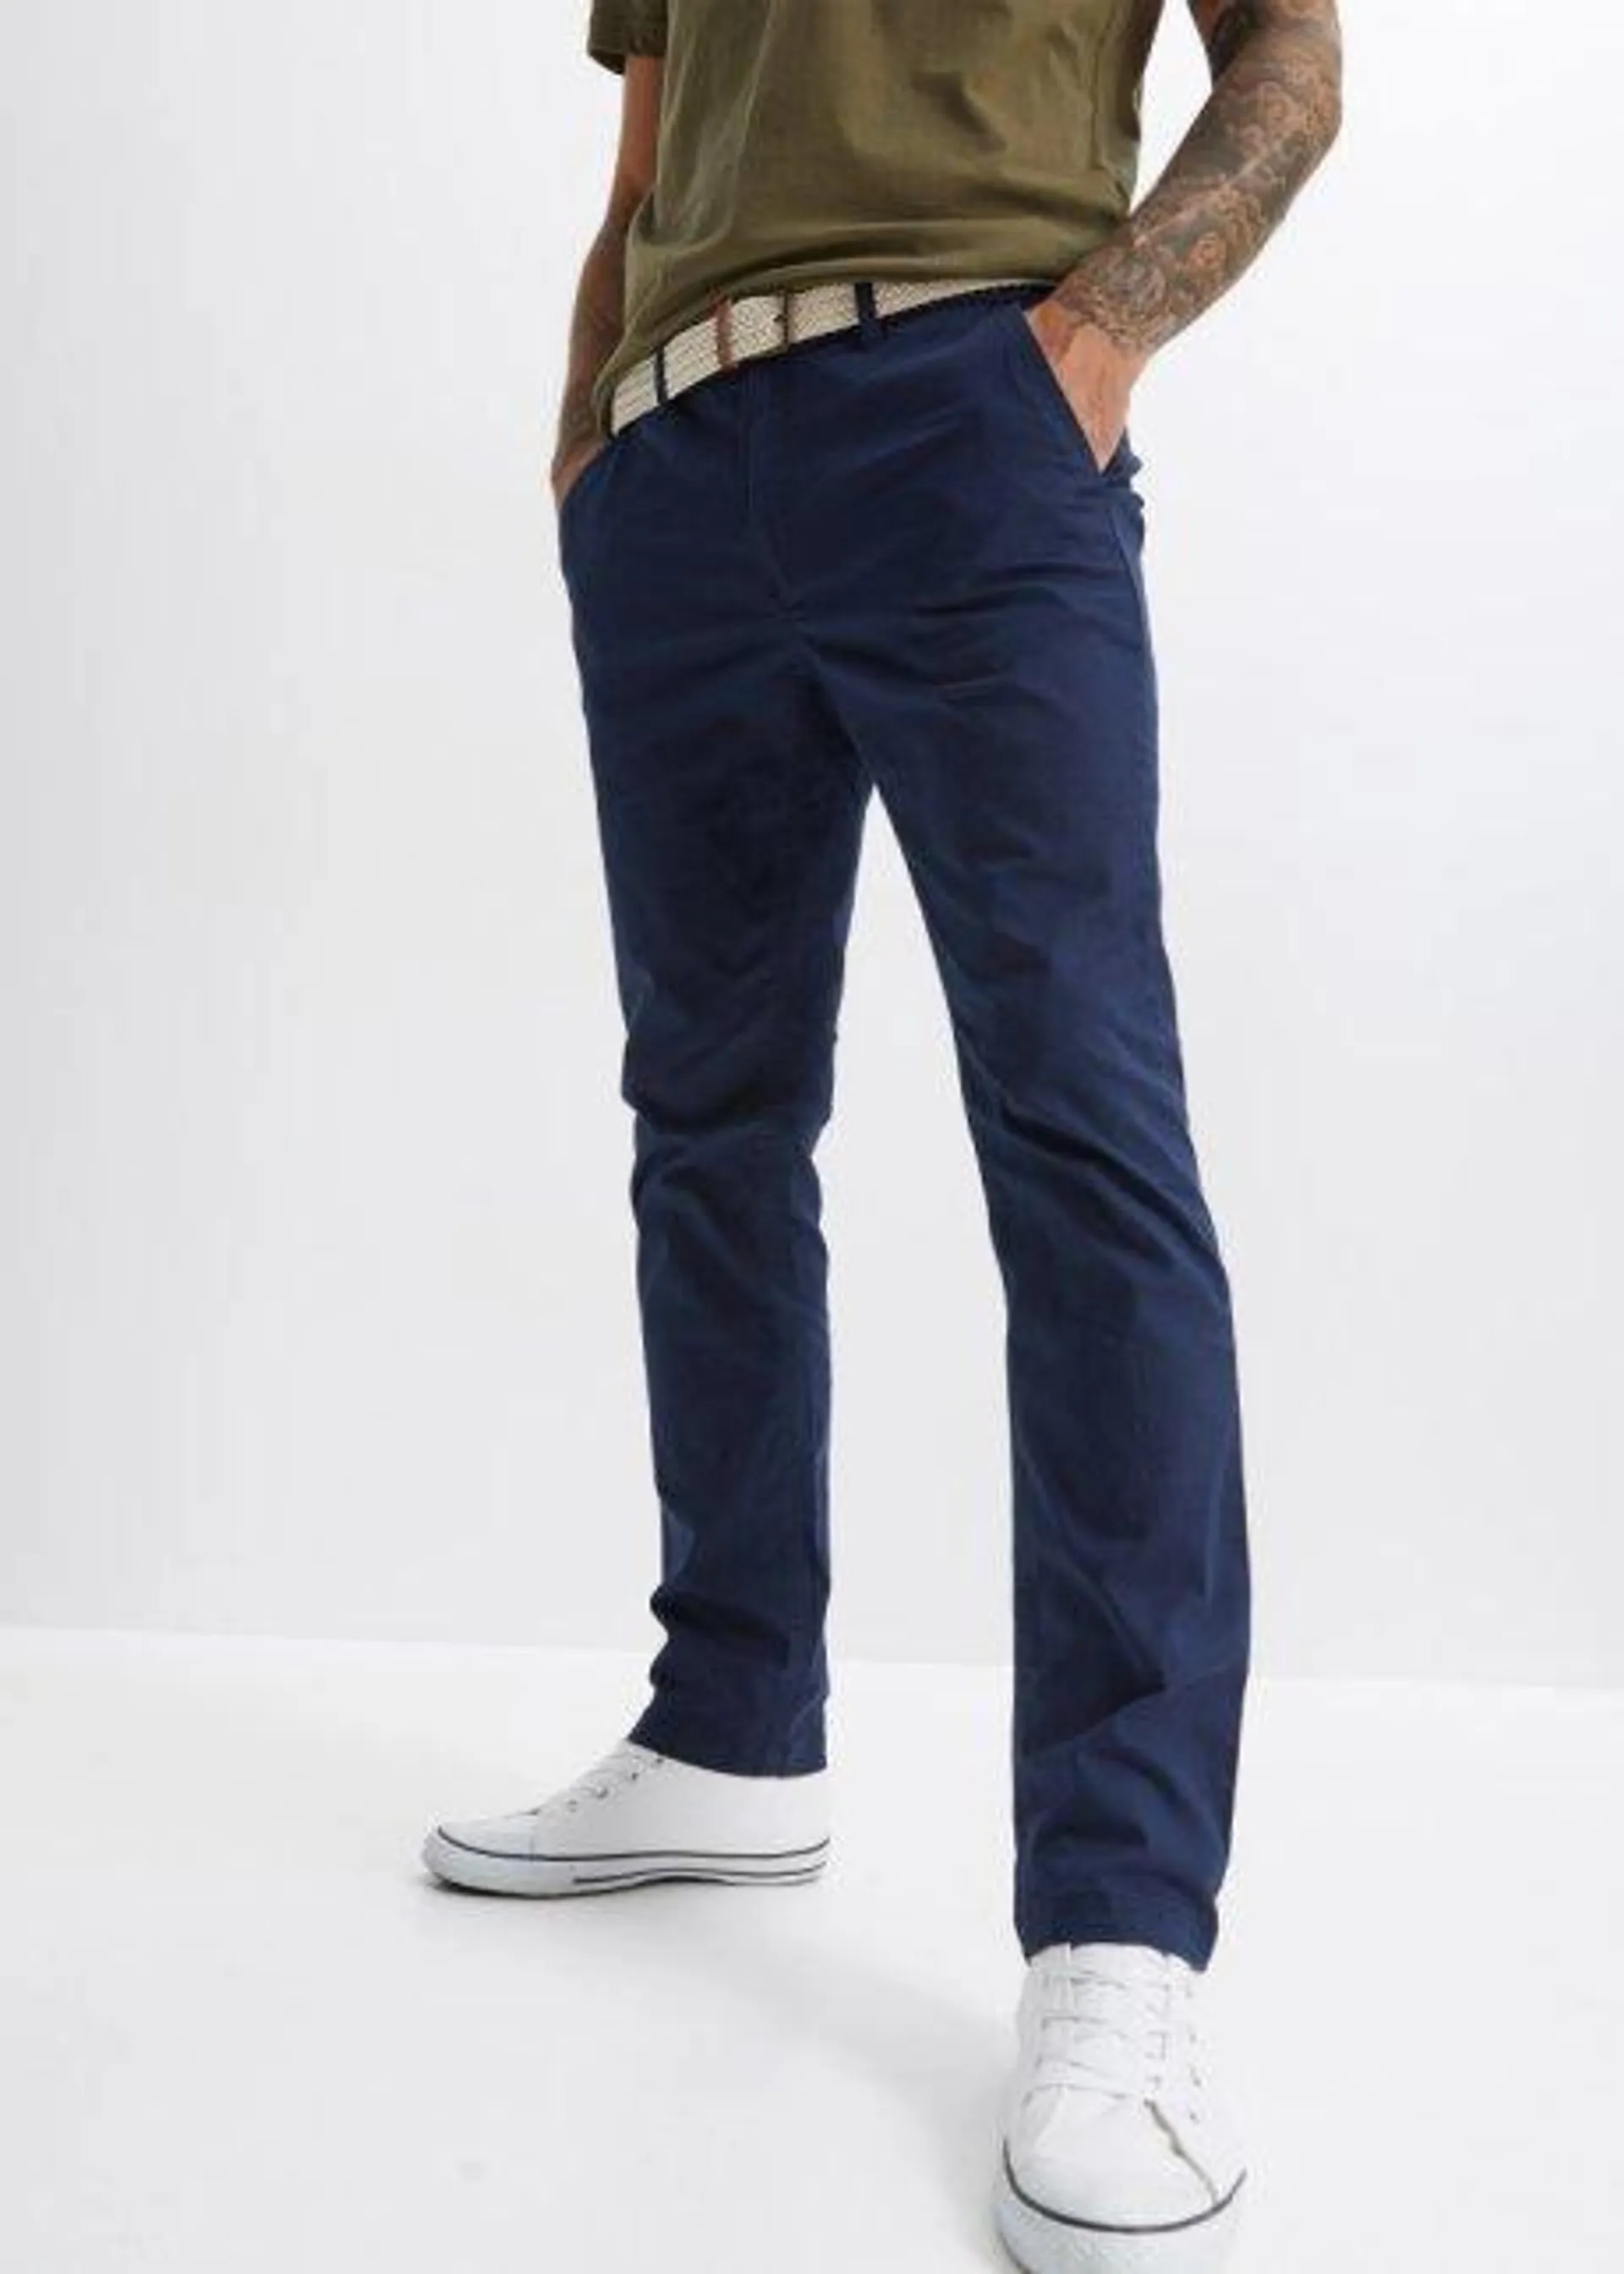 Pantaloni chino elasticizzati con cintura e taglio comfort regular fit, straight